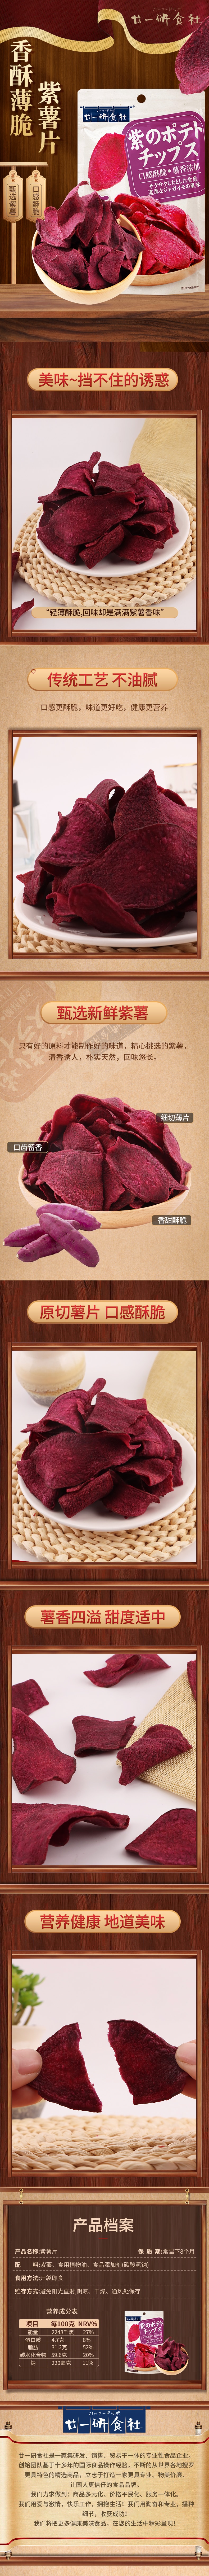 廿一研食社 酥脆原味紫薯片 138克 香脆地瓜片 不额外添加糖 金黄酥脆 薯香浓郁